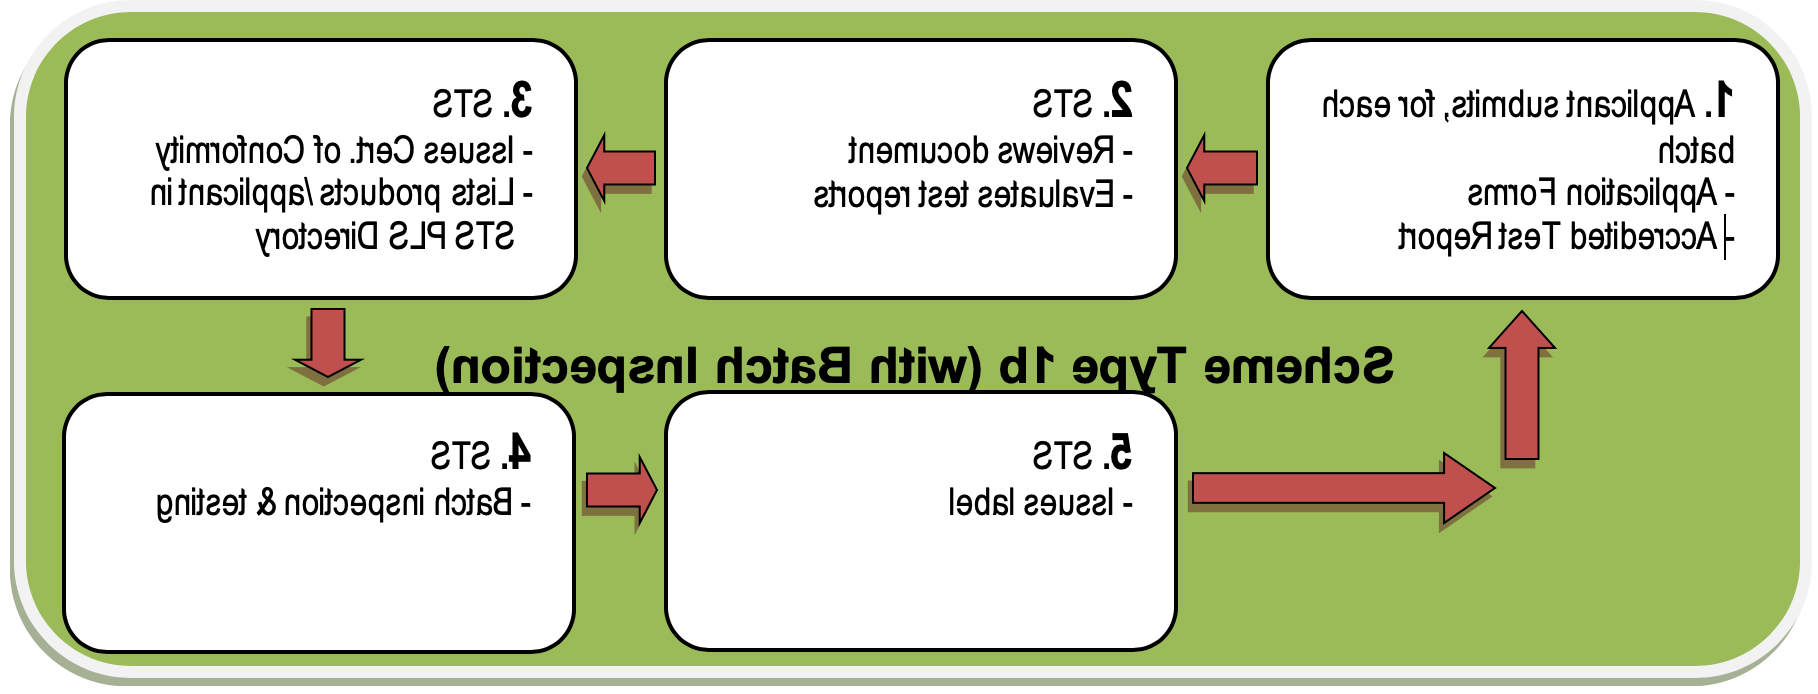 Scheme Type 1b